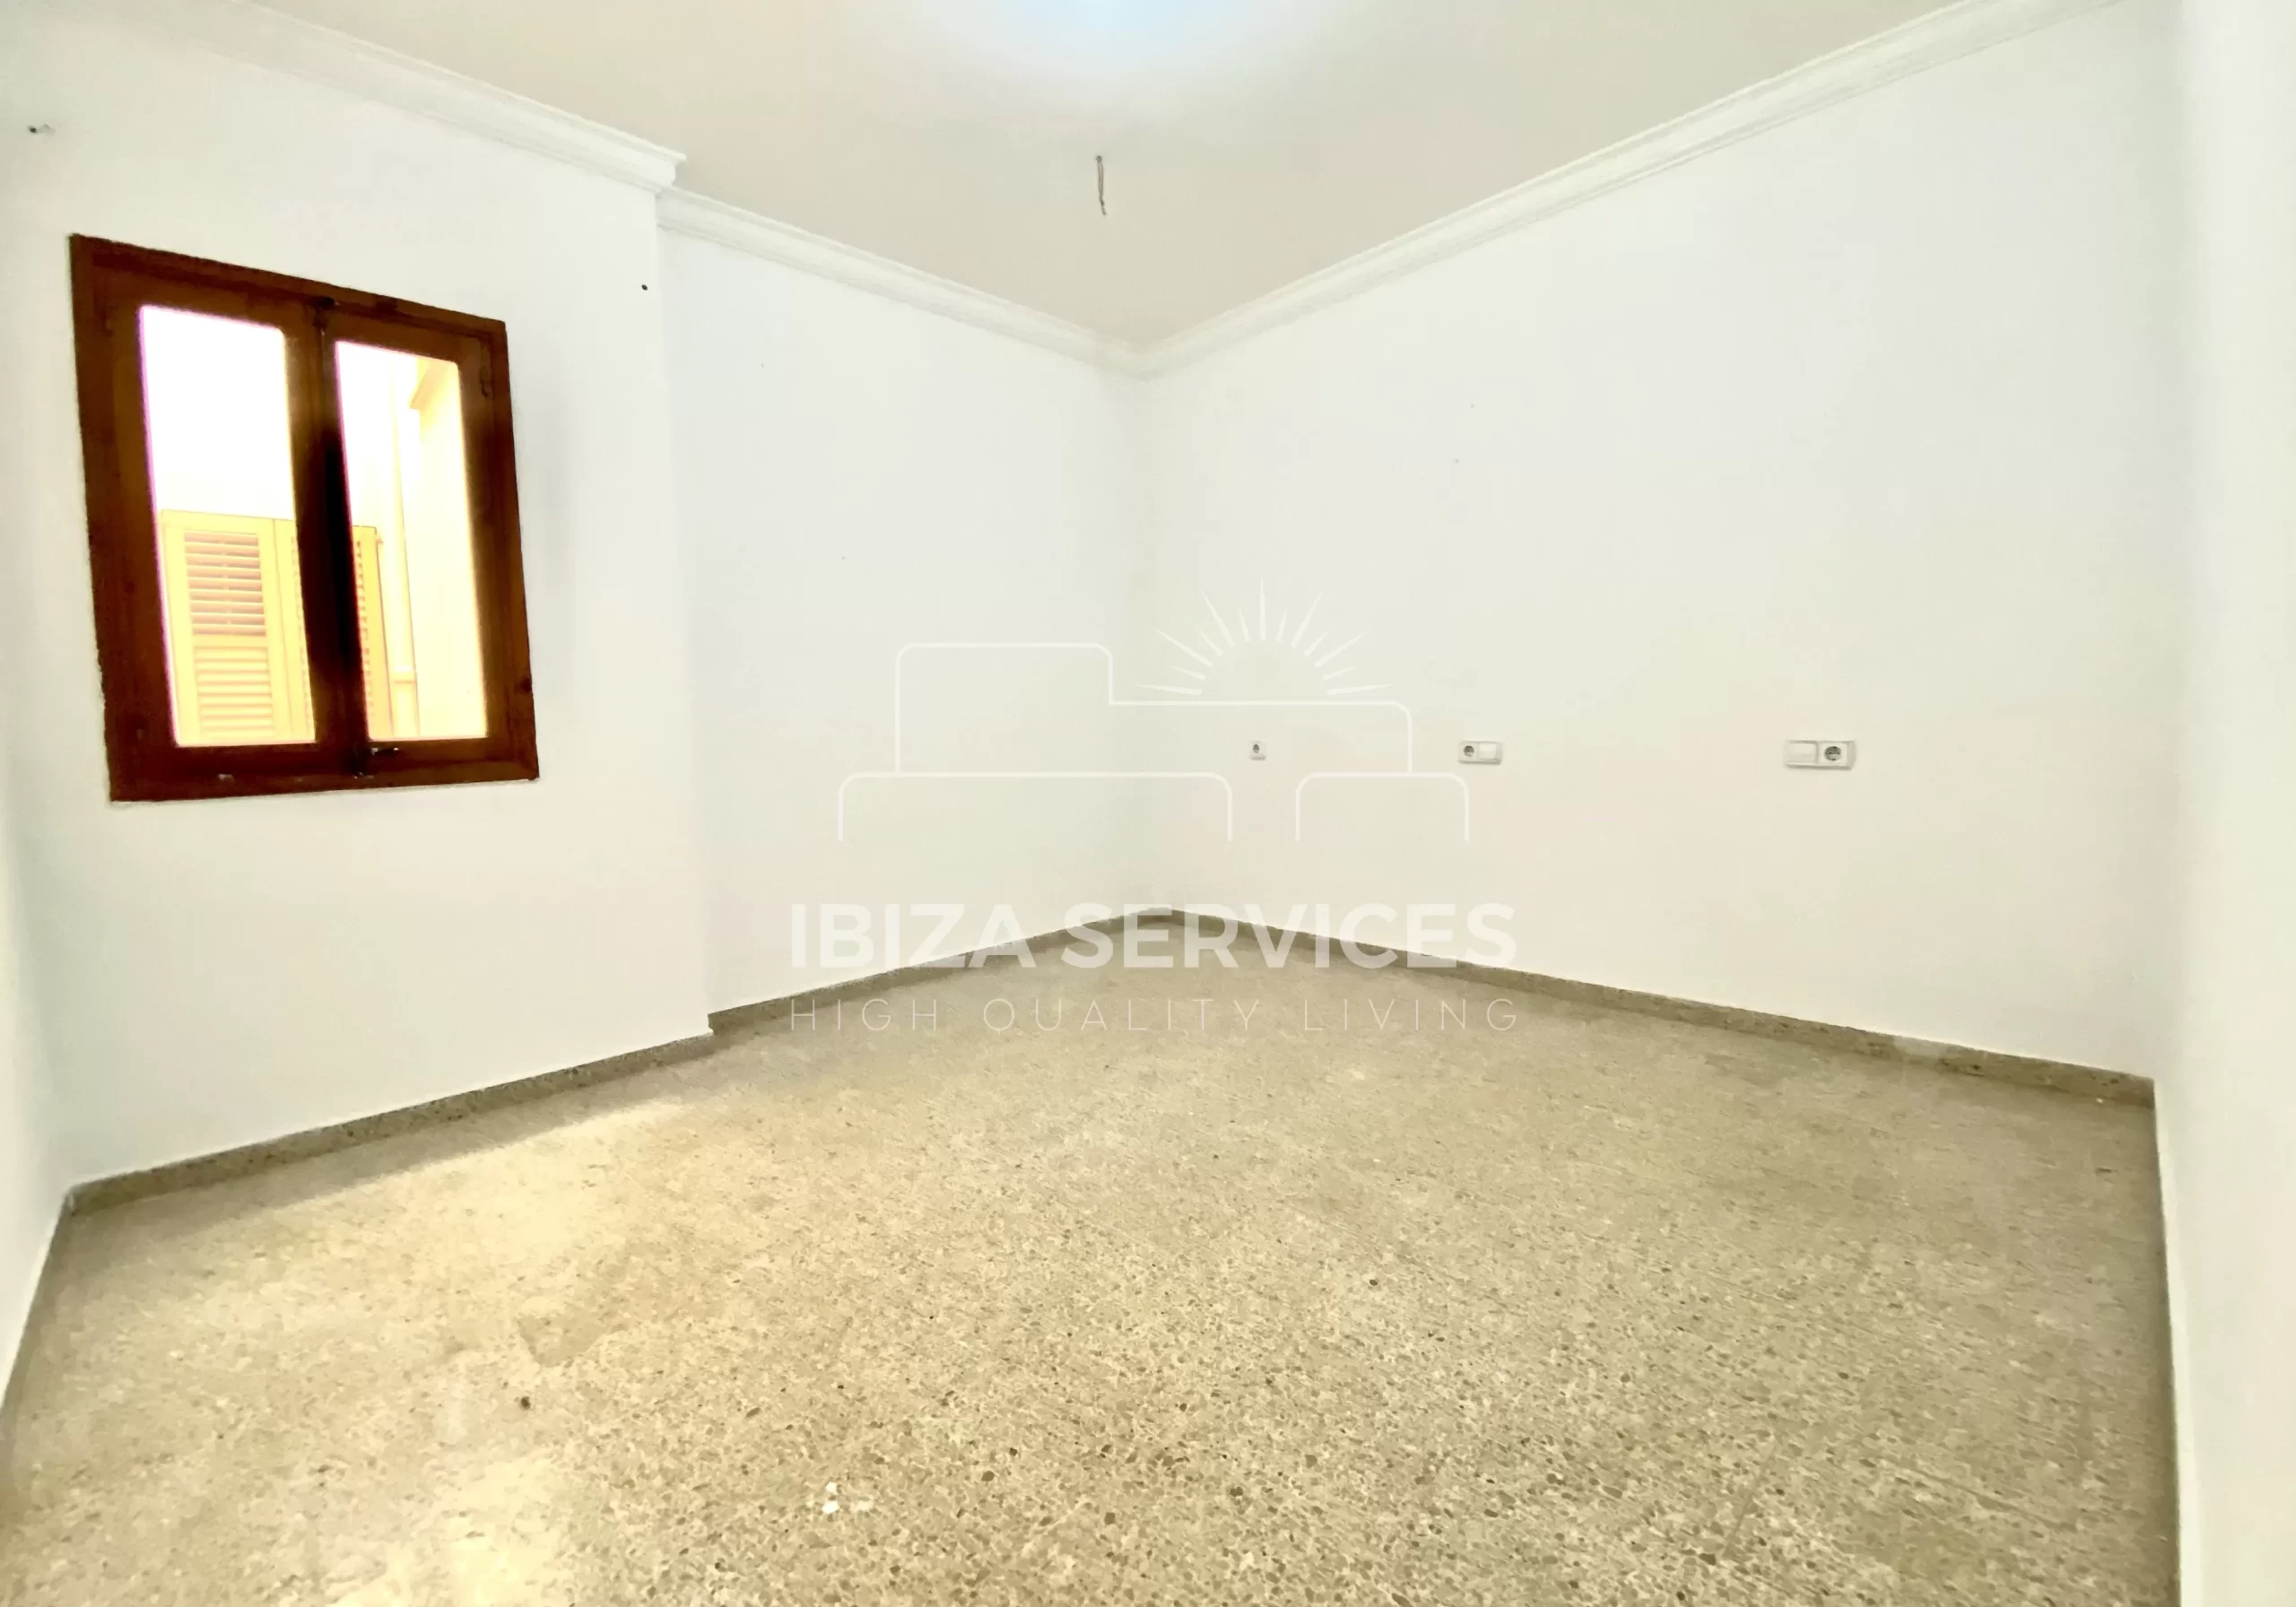 En vente appartement de 3 chambres à rénover à Ibiza ville